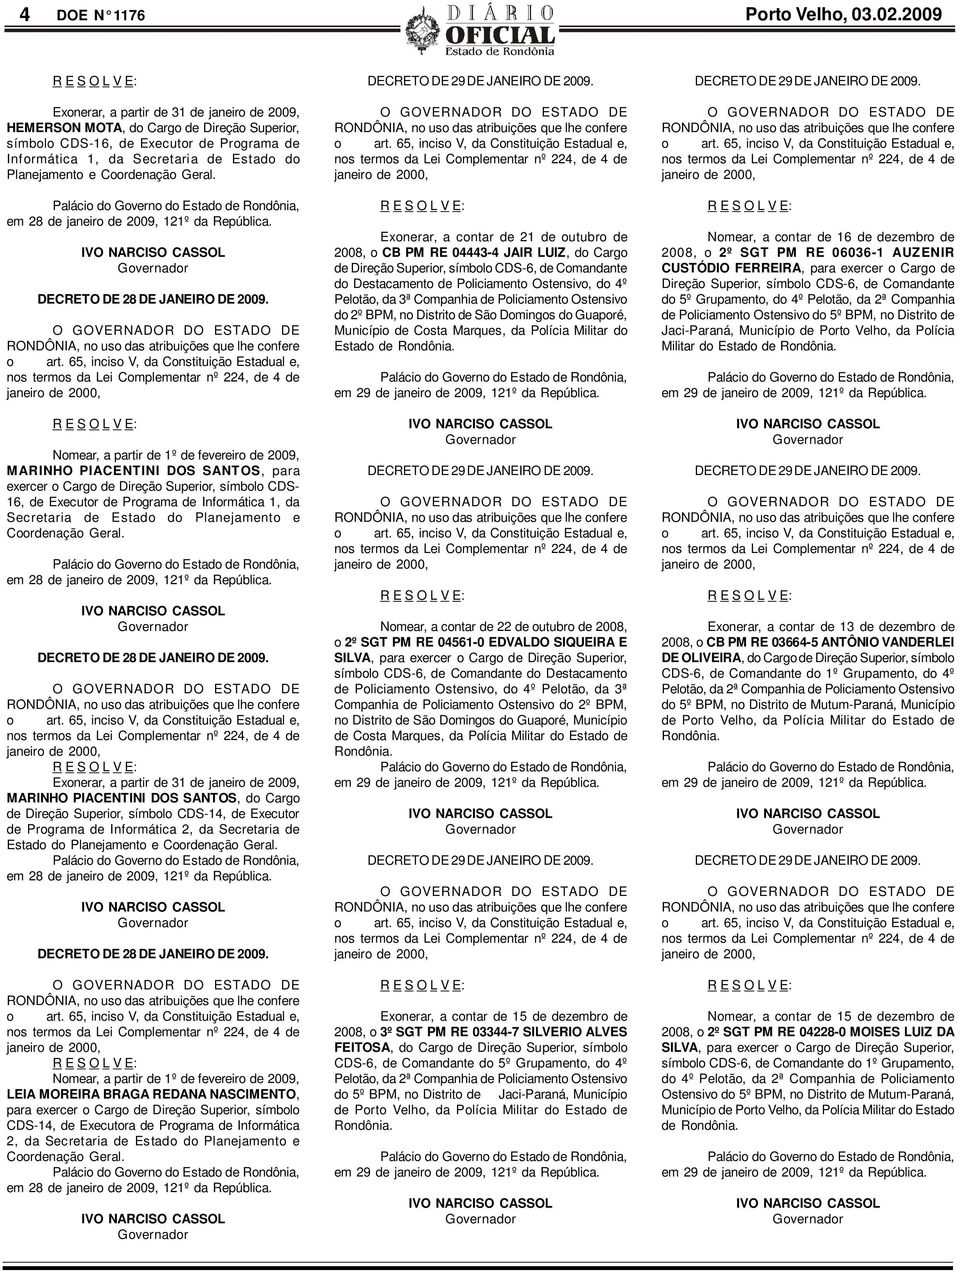 Coordenação Geral. em 28 de janeiro de 2009, 121º da República. DECRETO DE 28 DE JANEIRO DE 2009.